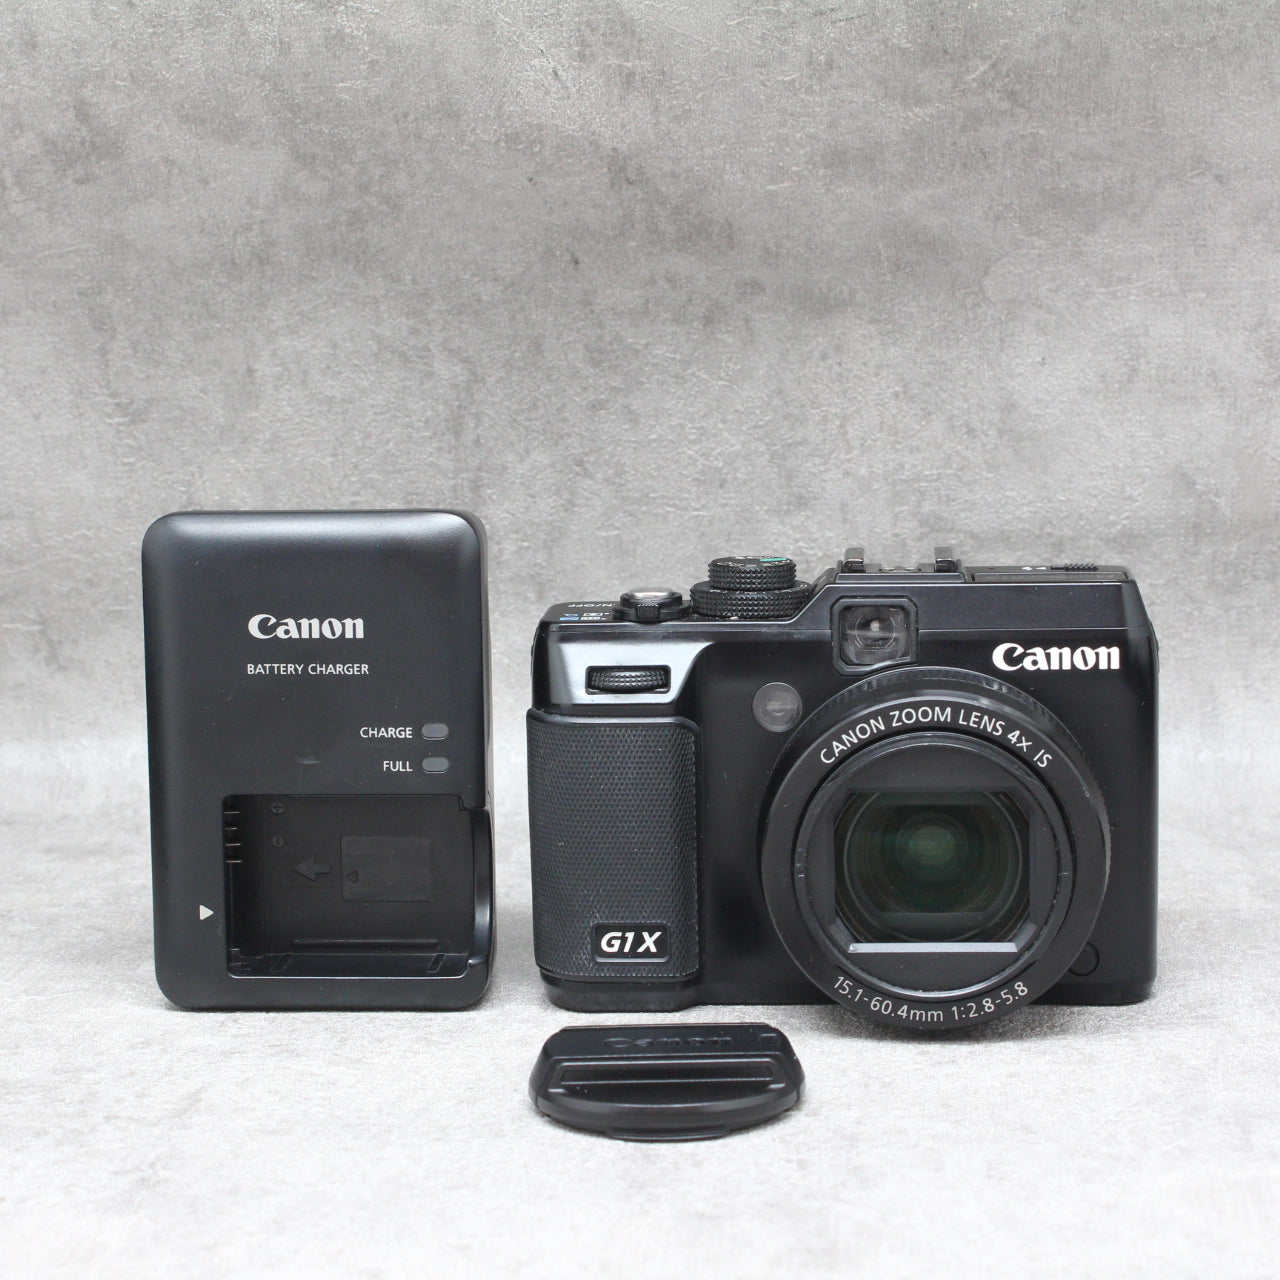 中古品 Canon Power shot G1X